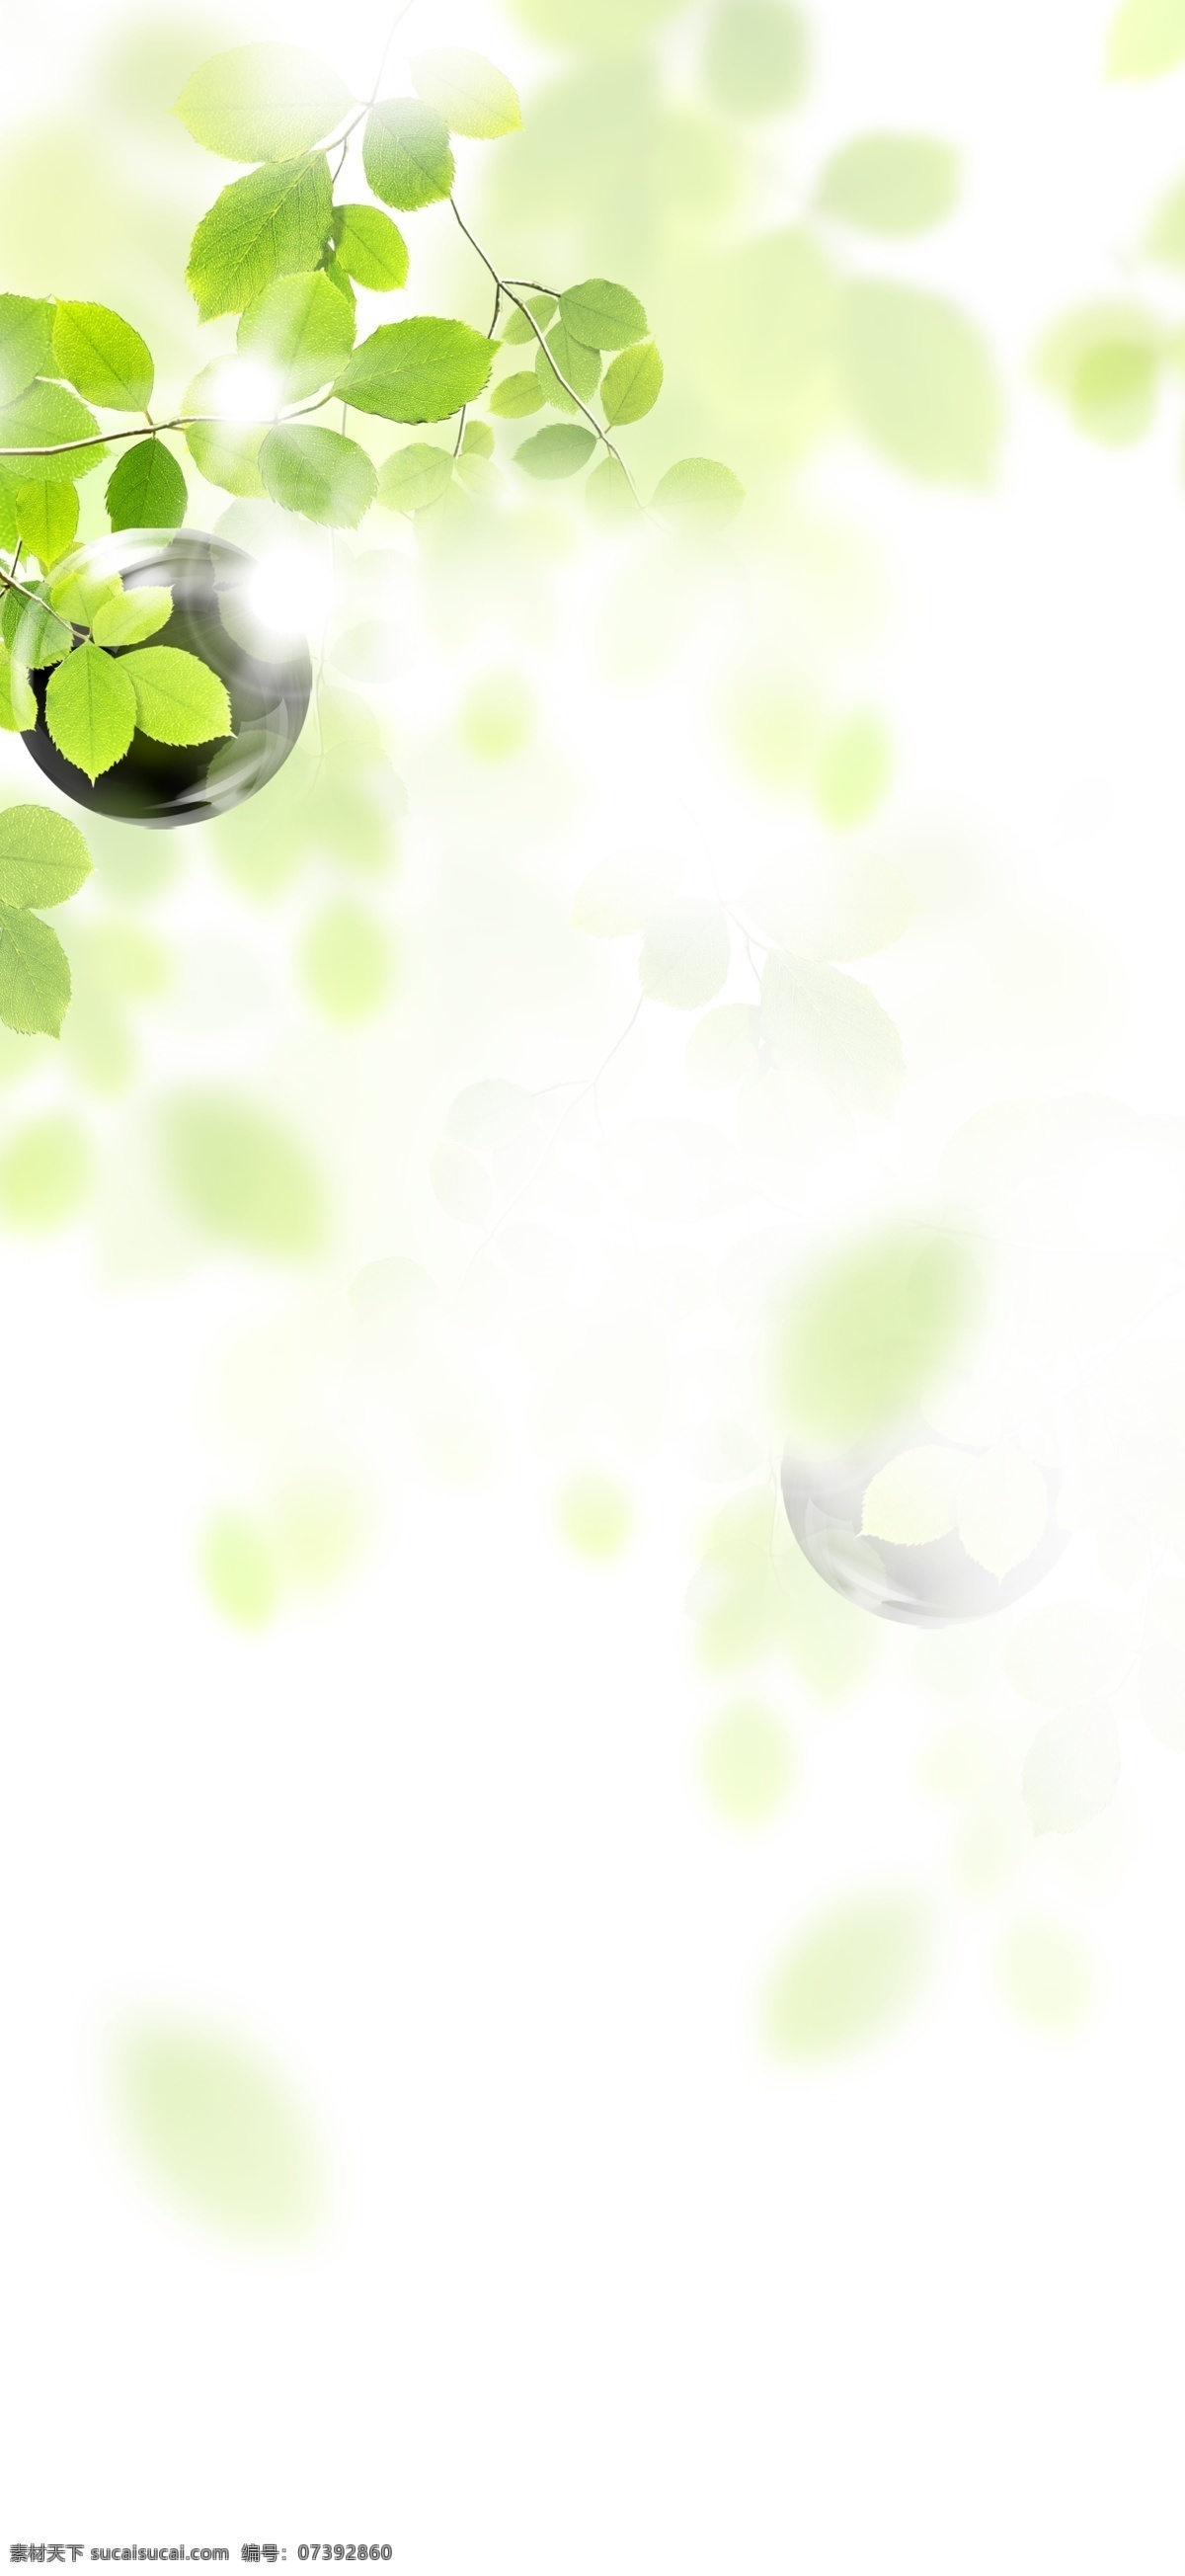 绿色 朦胧 树叶 背景 绿色树叶 朦胧叶子装饰 浅绿色 泛光 绿叶 清新 素材图片